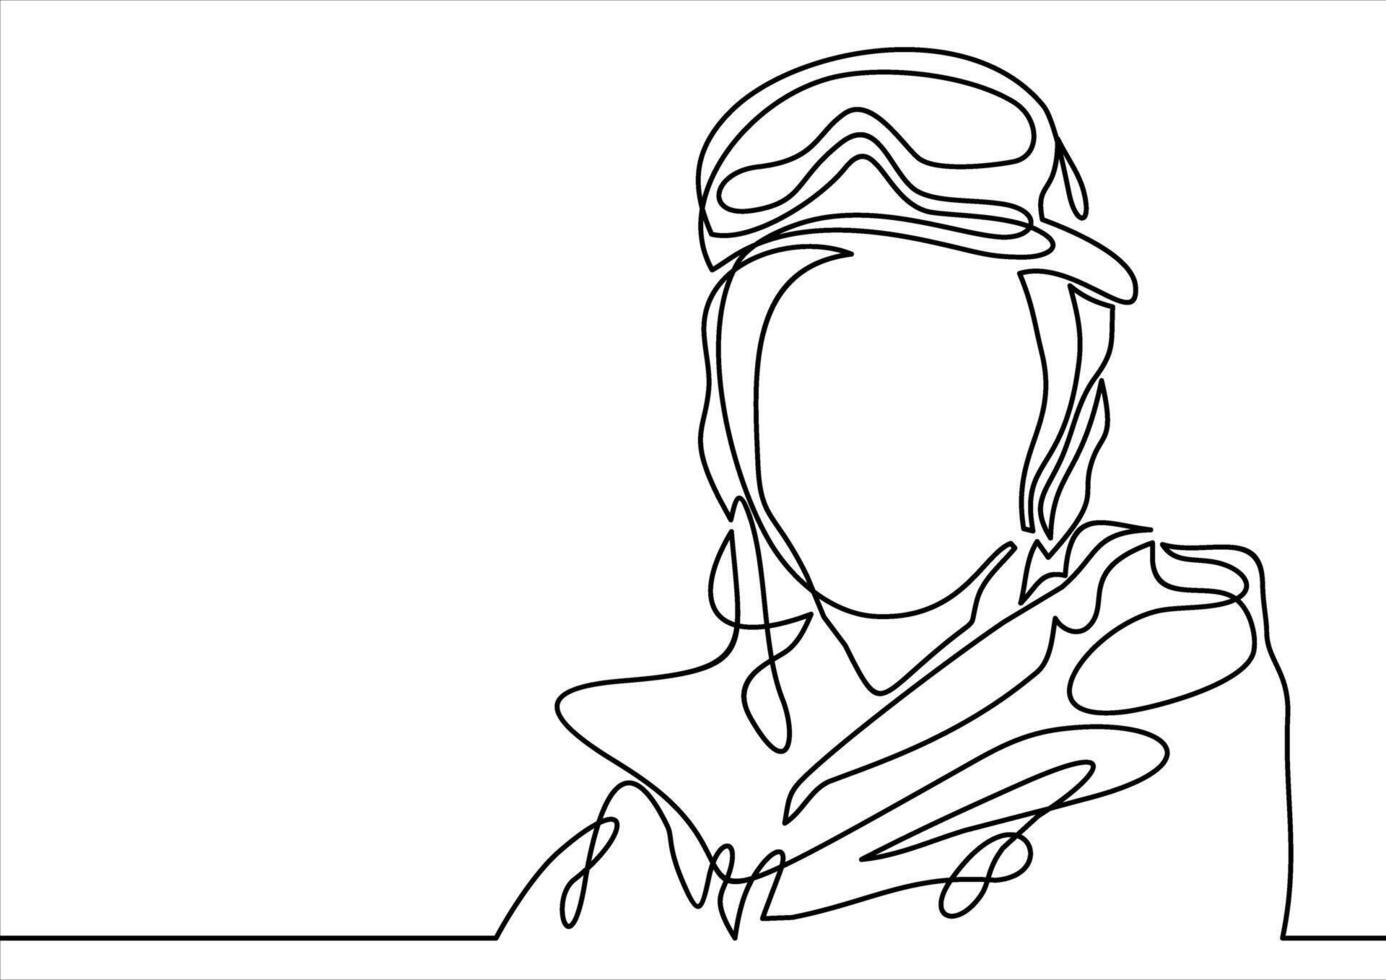 snowboarder hoofd- doorlopend lijn tekening vector